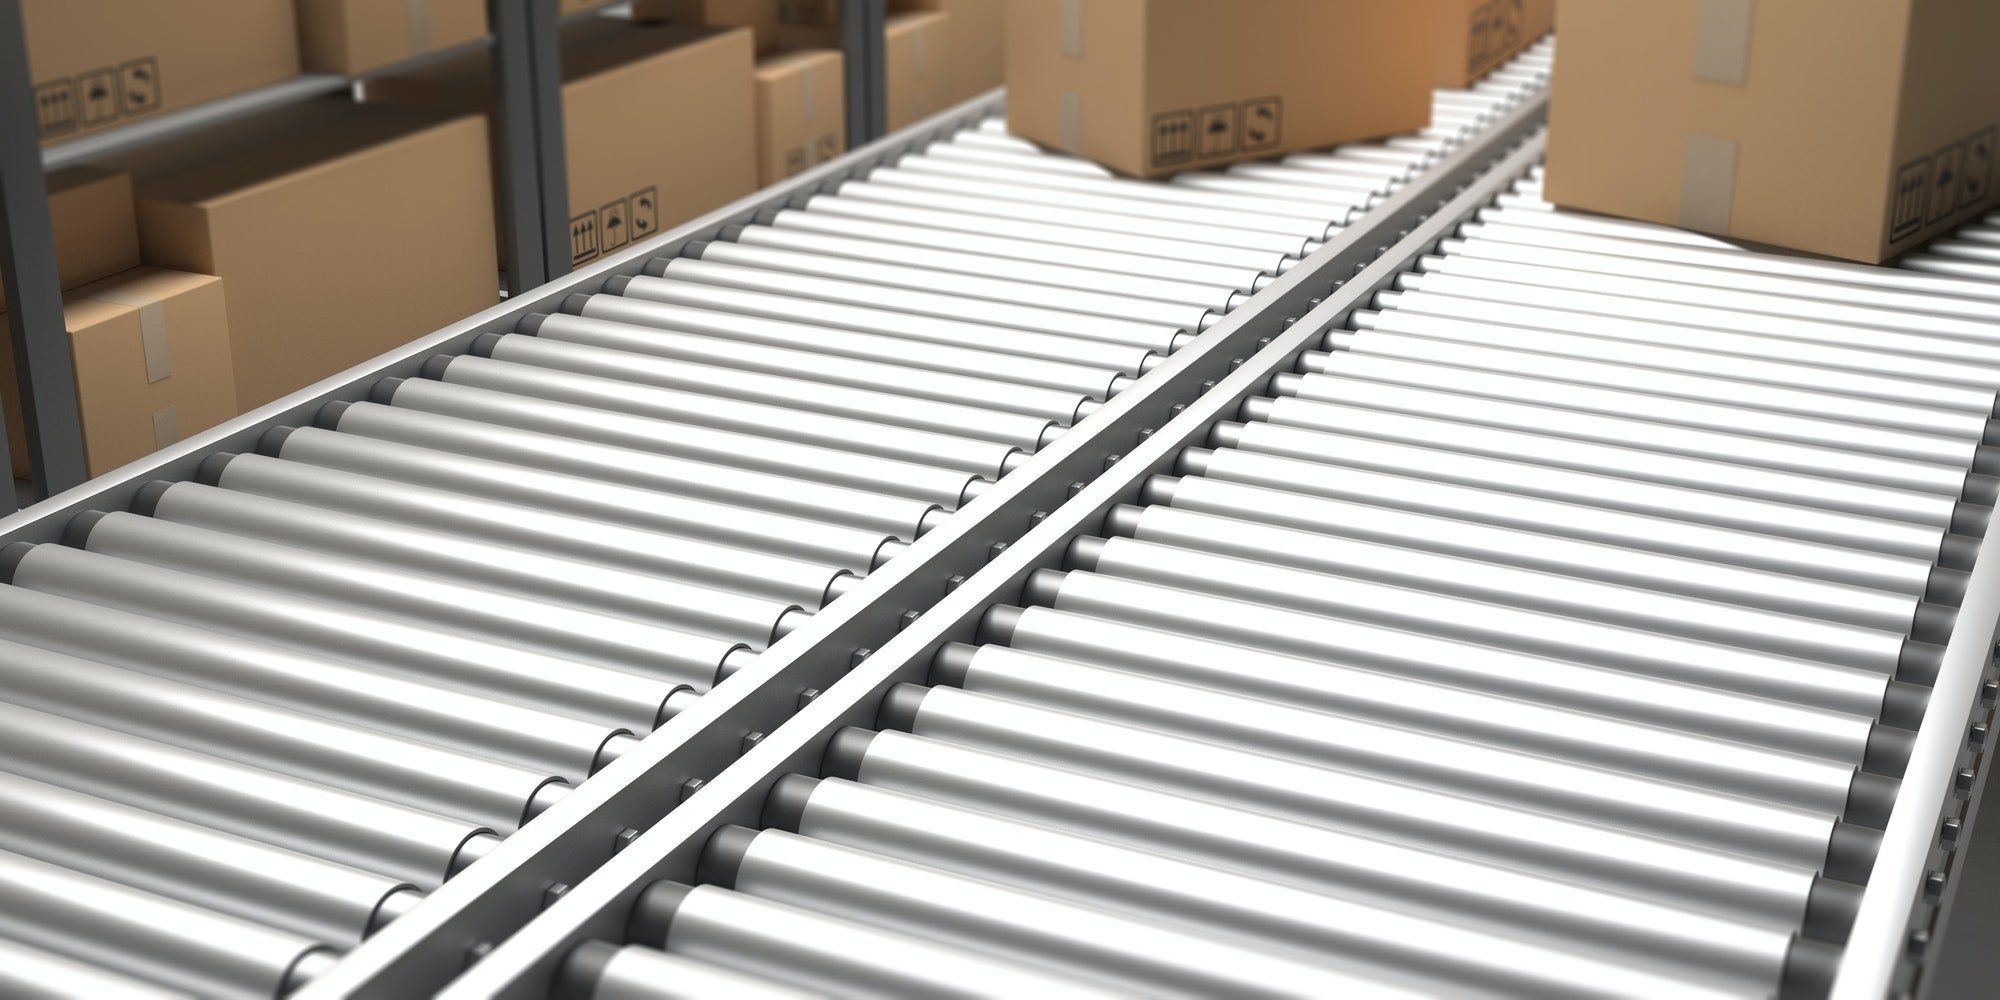 Conveyor belt. Handling and distribution concept. 3d illustration